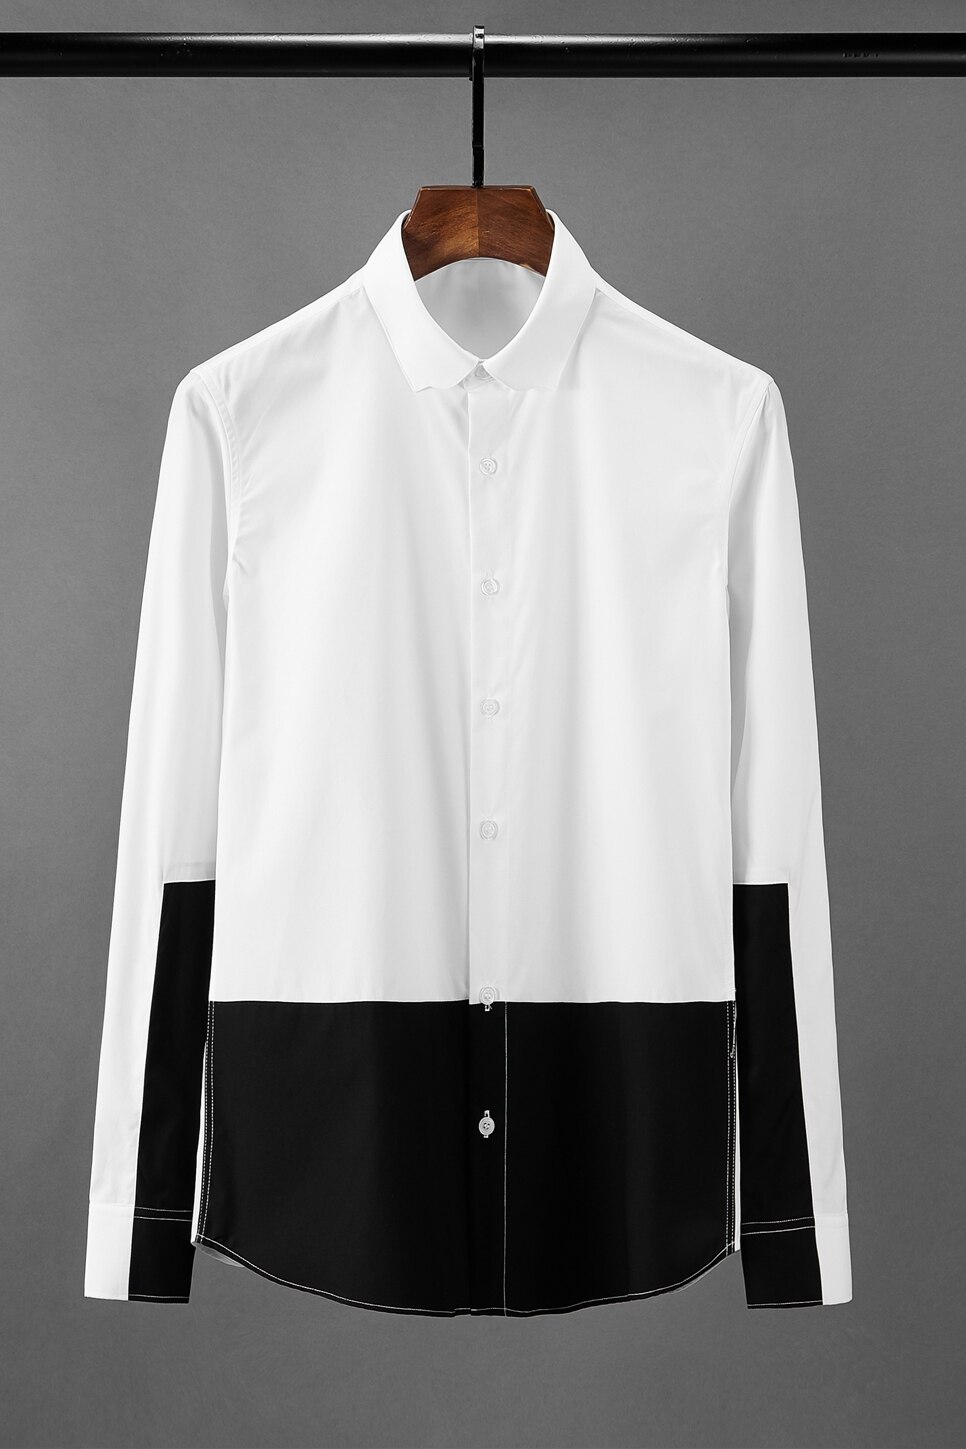 Minglu herre skjorte luksus sort hvid splejsning langærmet herre kjole skjorter slim fit skjorter mand plus størrelse 4xl herre skjorter